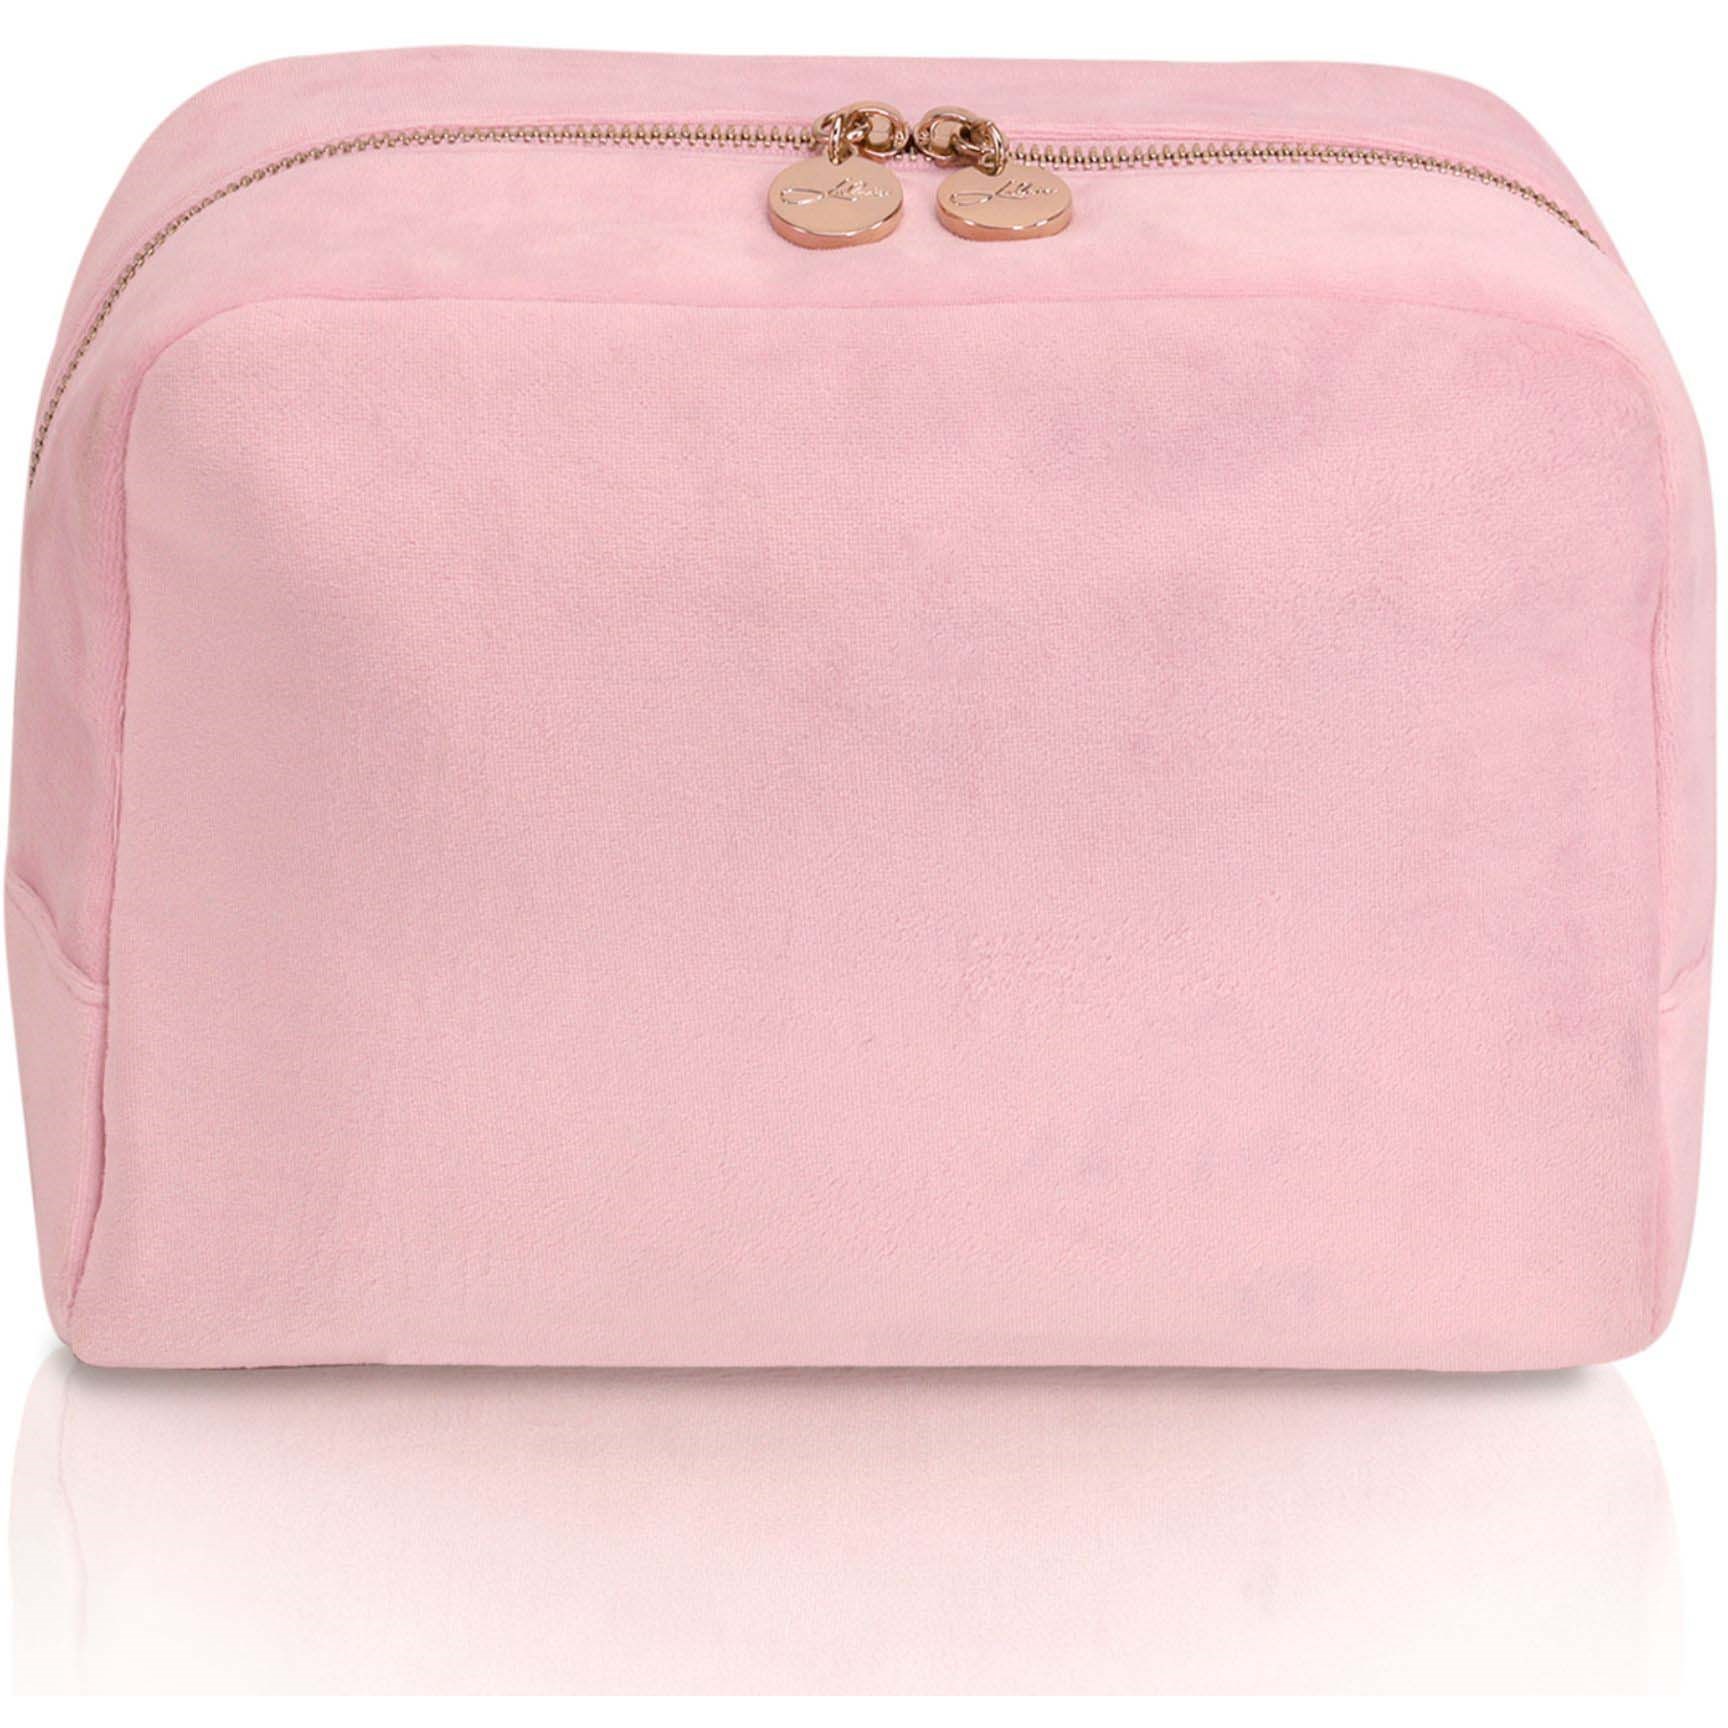 Bilde av Lulu's Accessories Toiletry Bag Velvet Pink